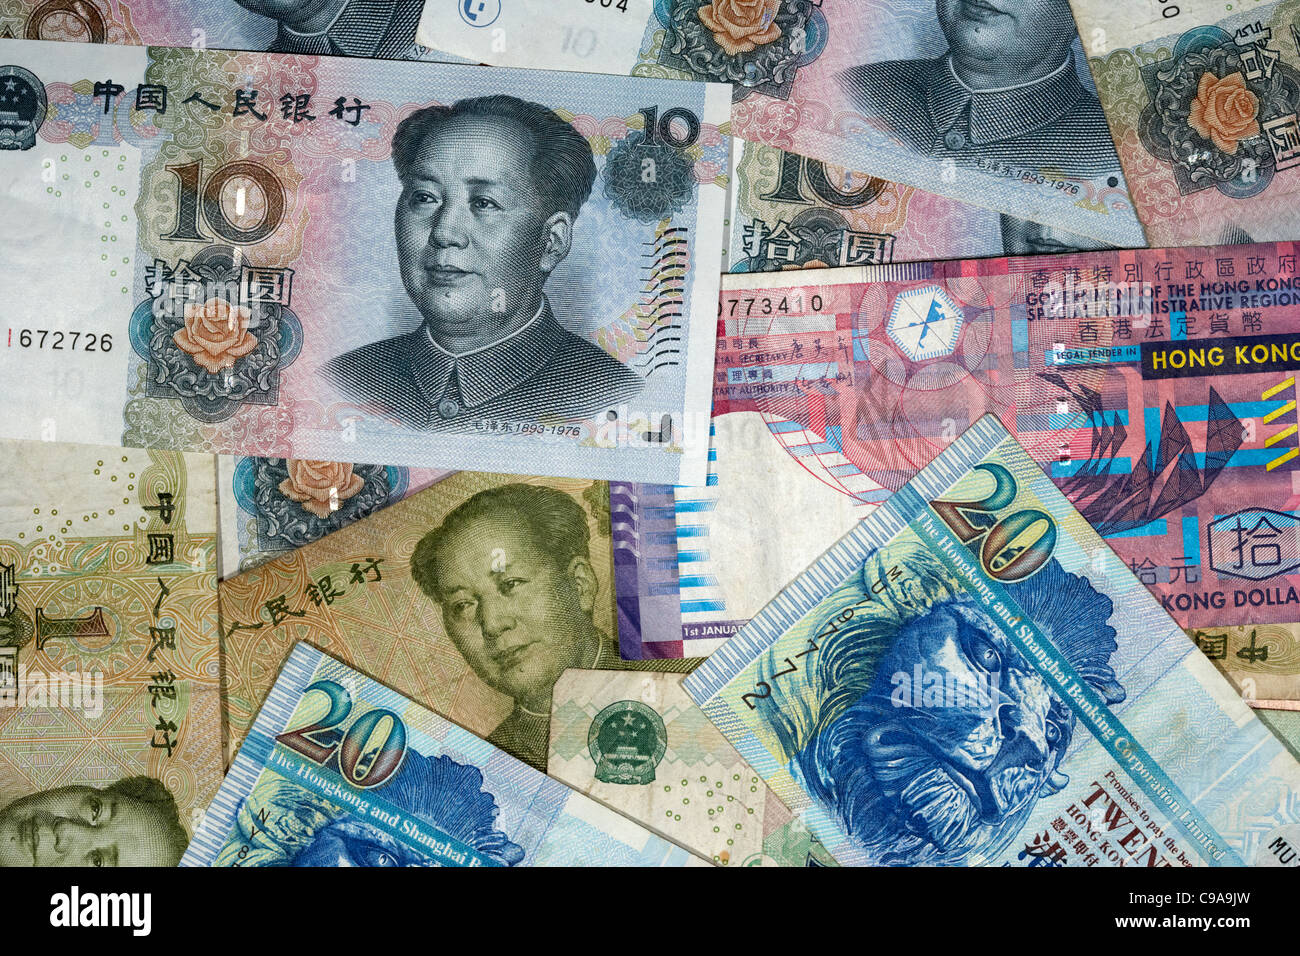 El renminbi chino RMB y billetes de dólar de Hong kong Foto de stock